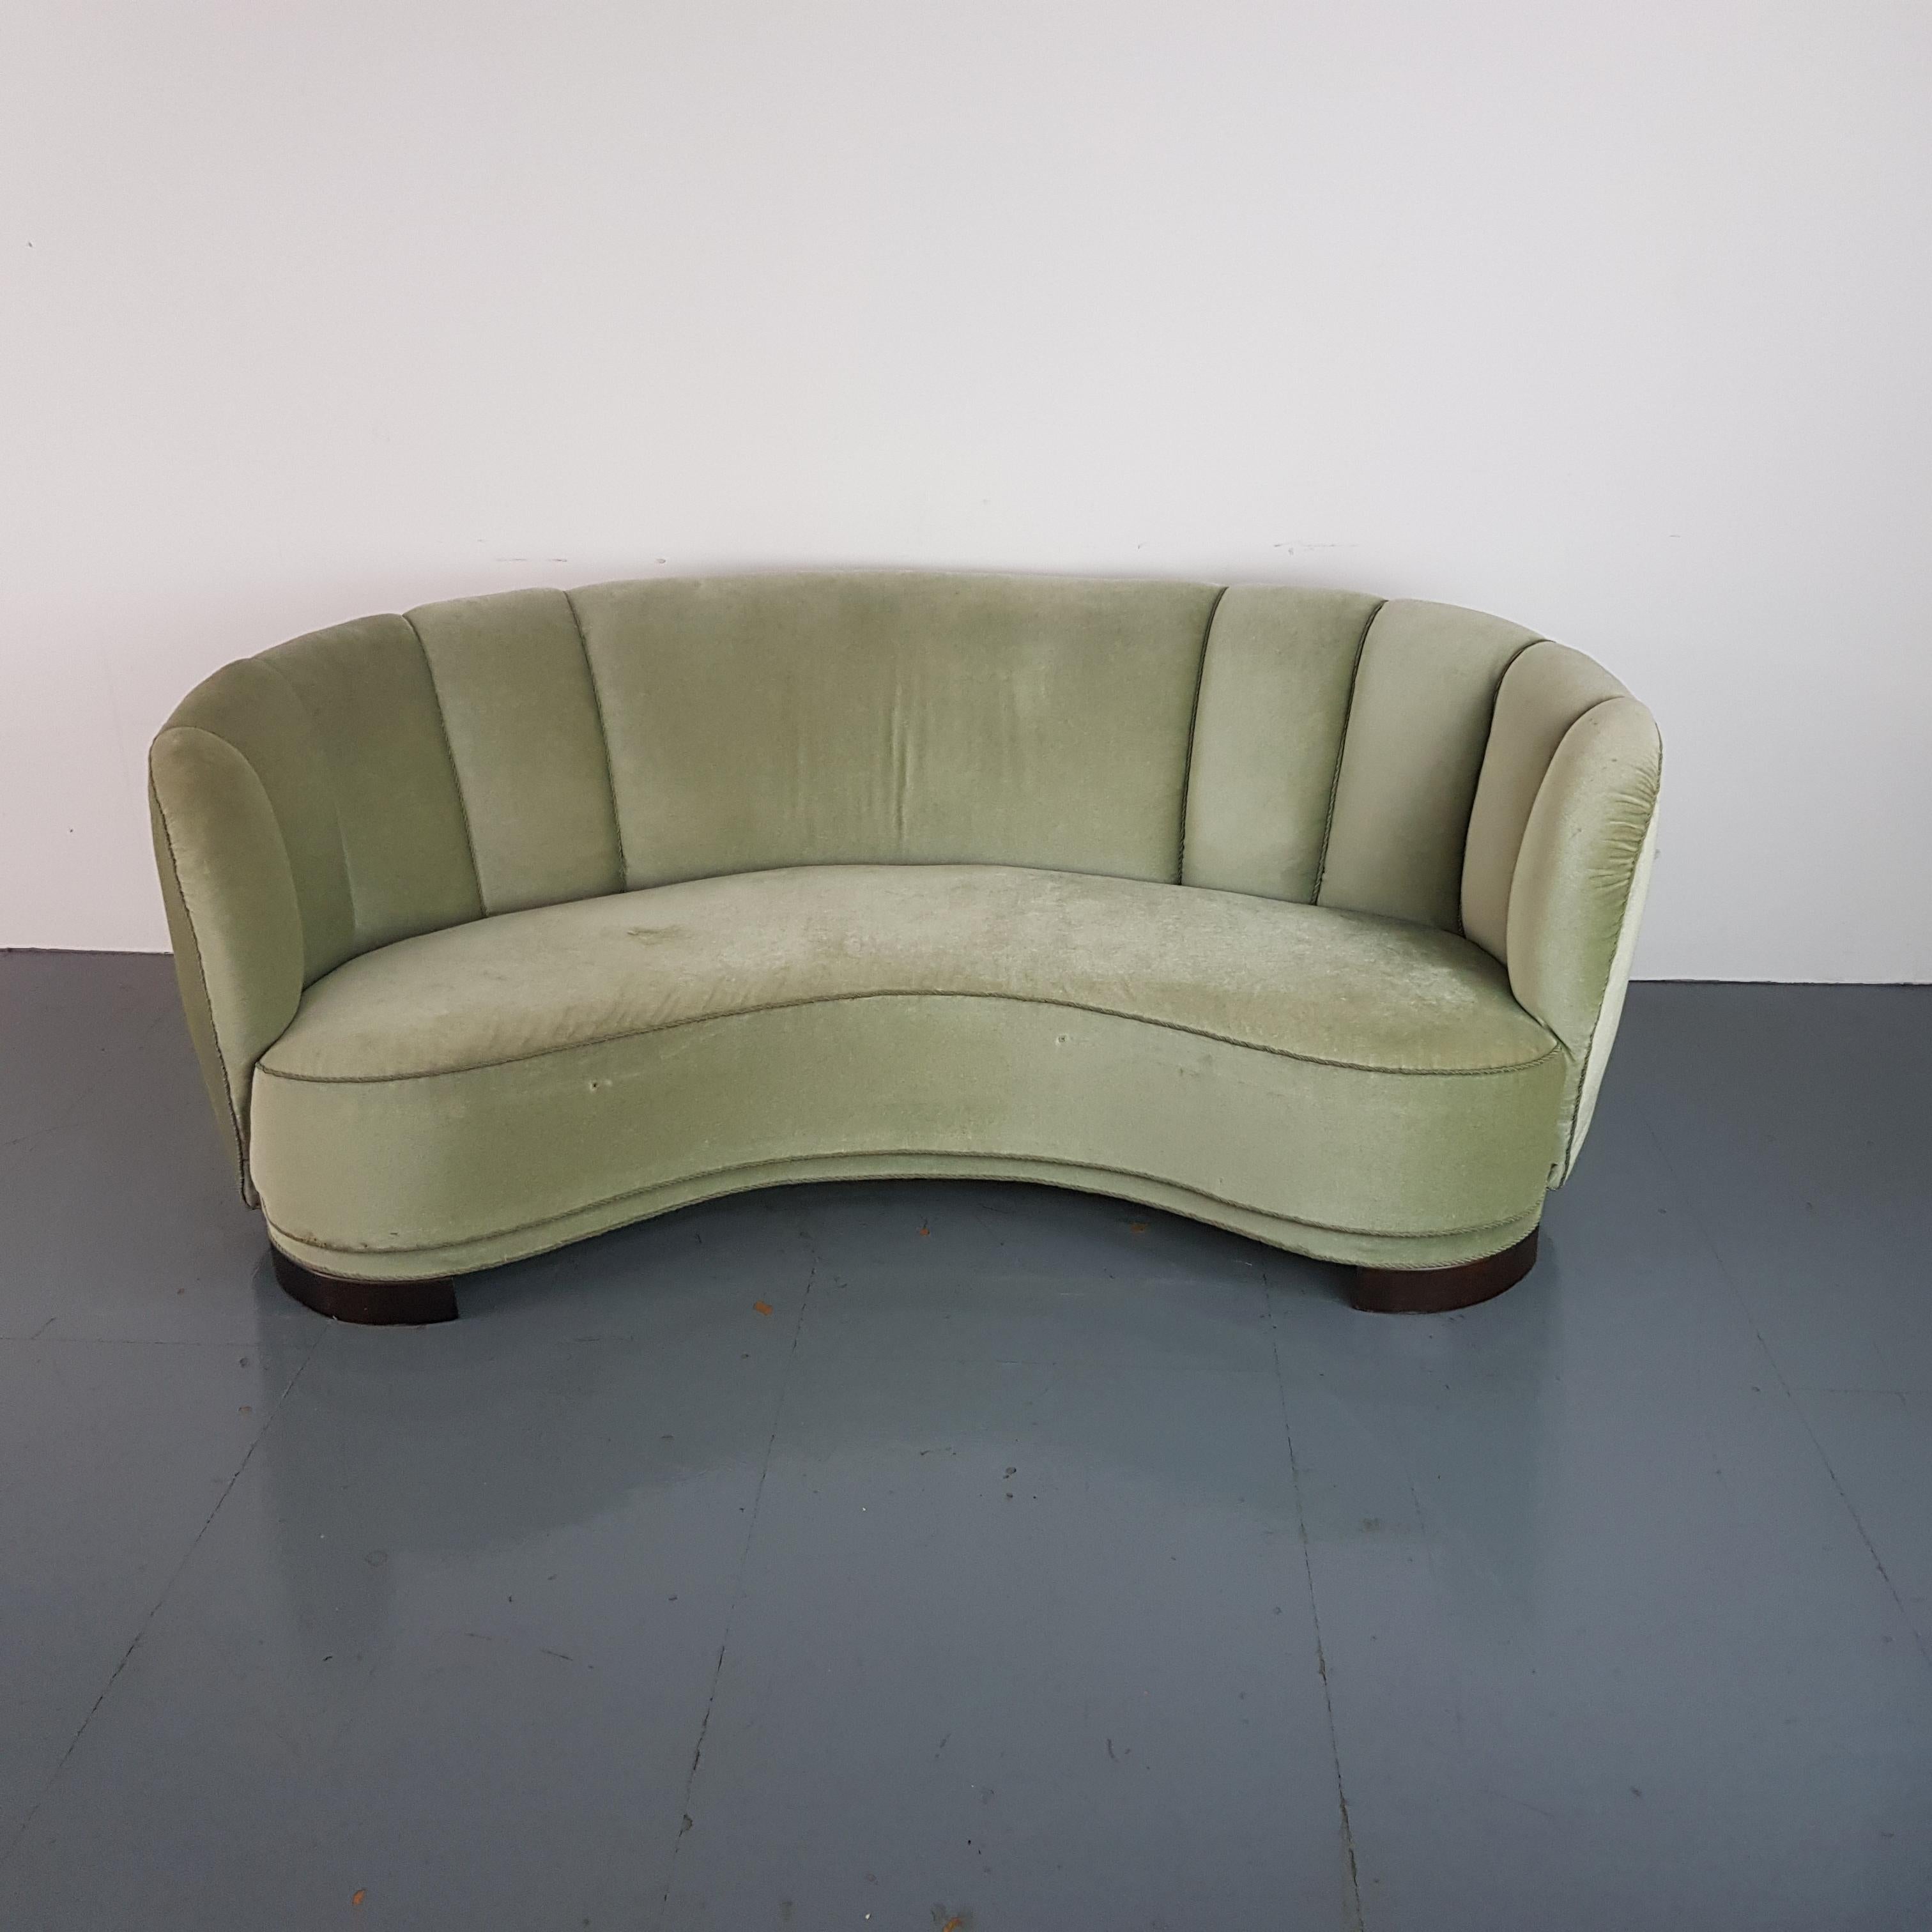 20th Century Vintage 1930s-1940s Danish Banana Sofa with Original Green Velvet Upholstery For Sale